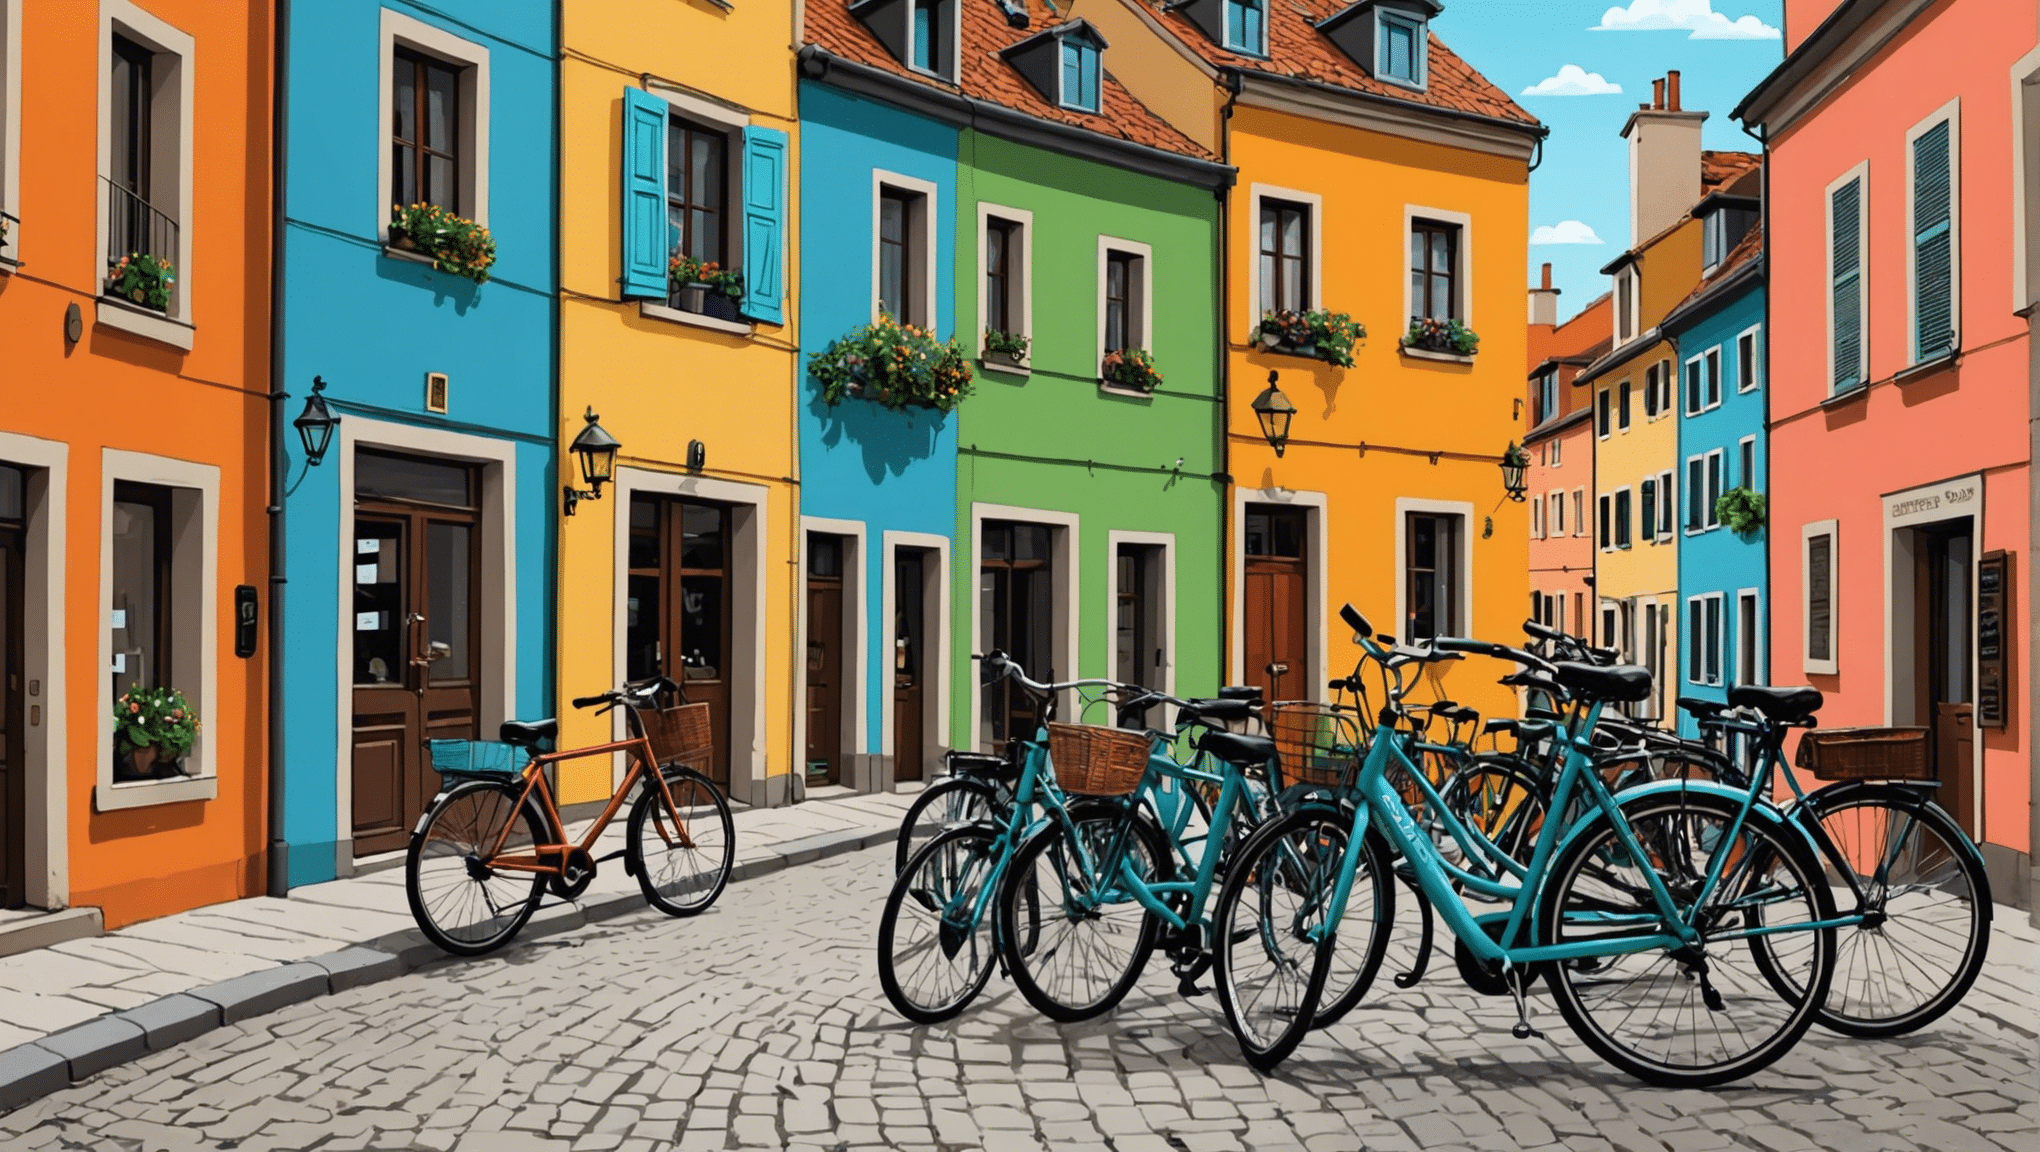 découvrez les destinations incontournables pour les amateurs de voyages à vélo en europe avec nos suggestions pour des aventures inoubliables à vélo.